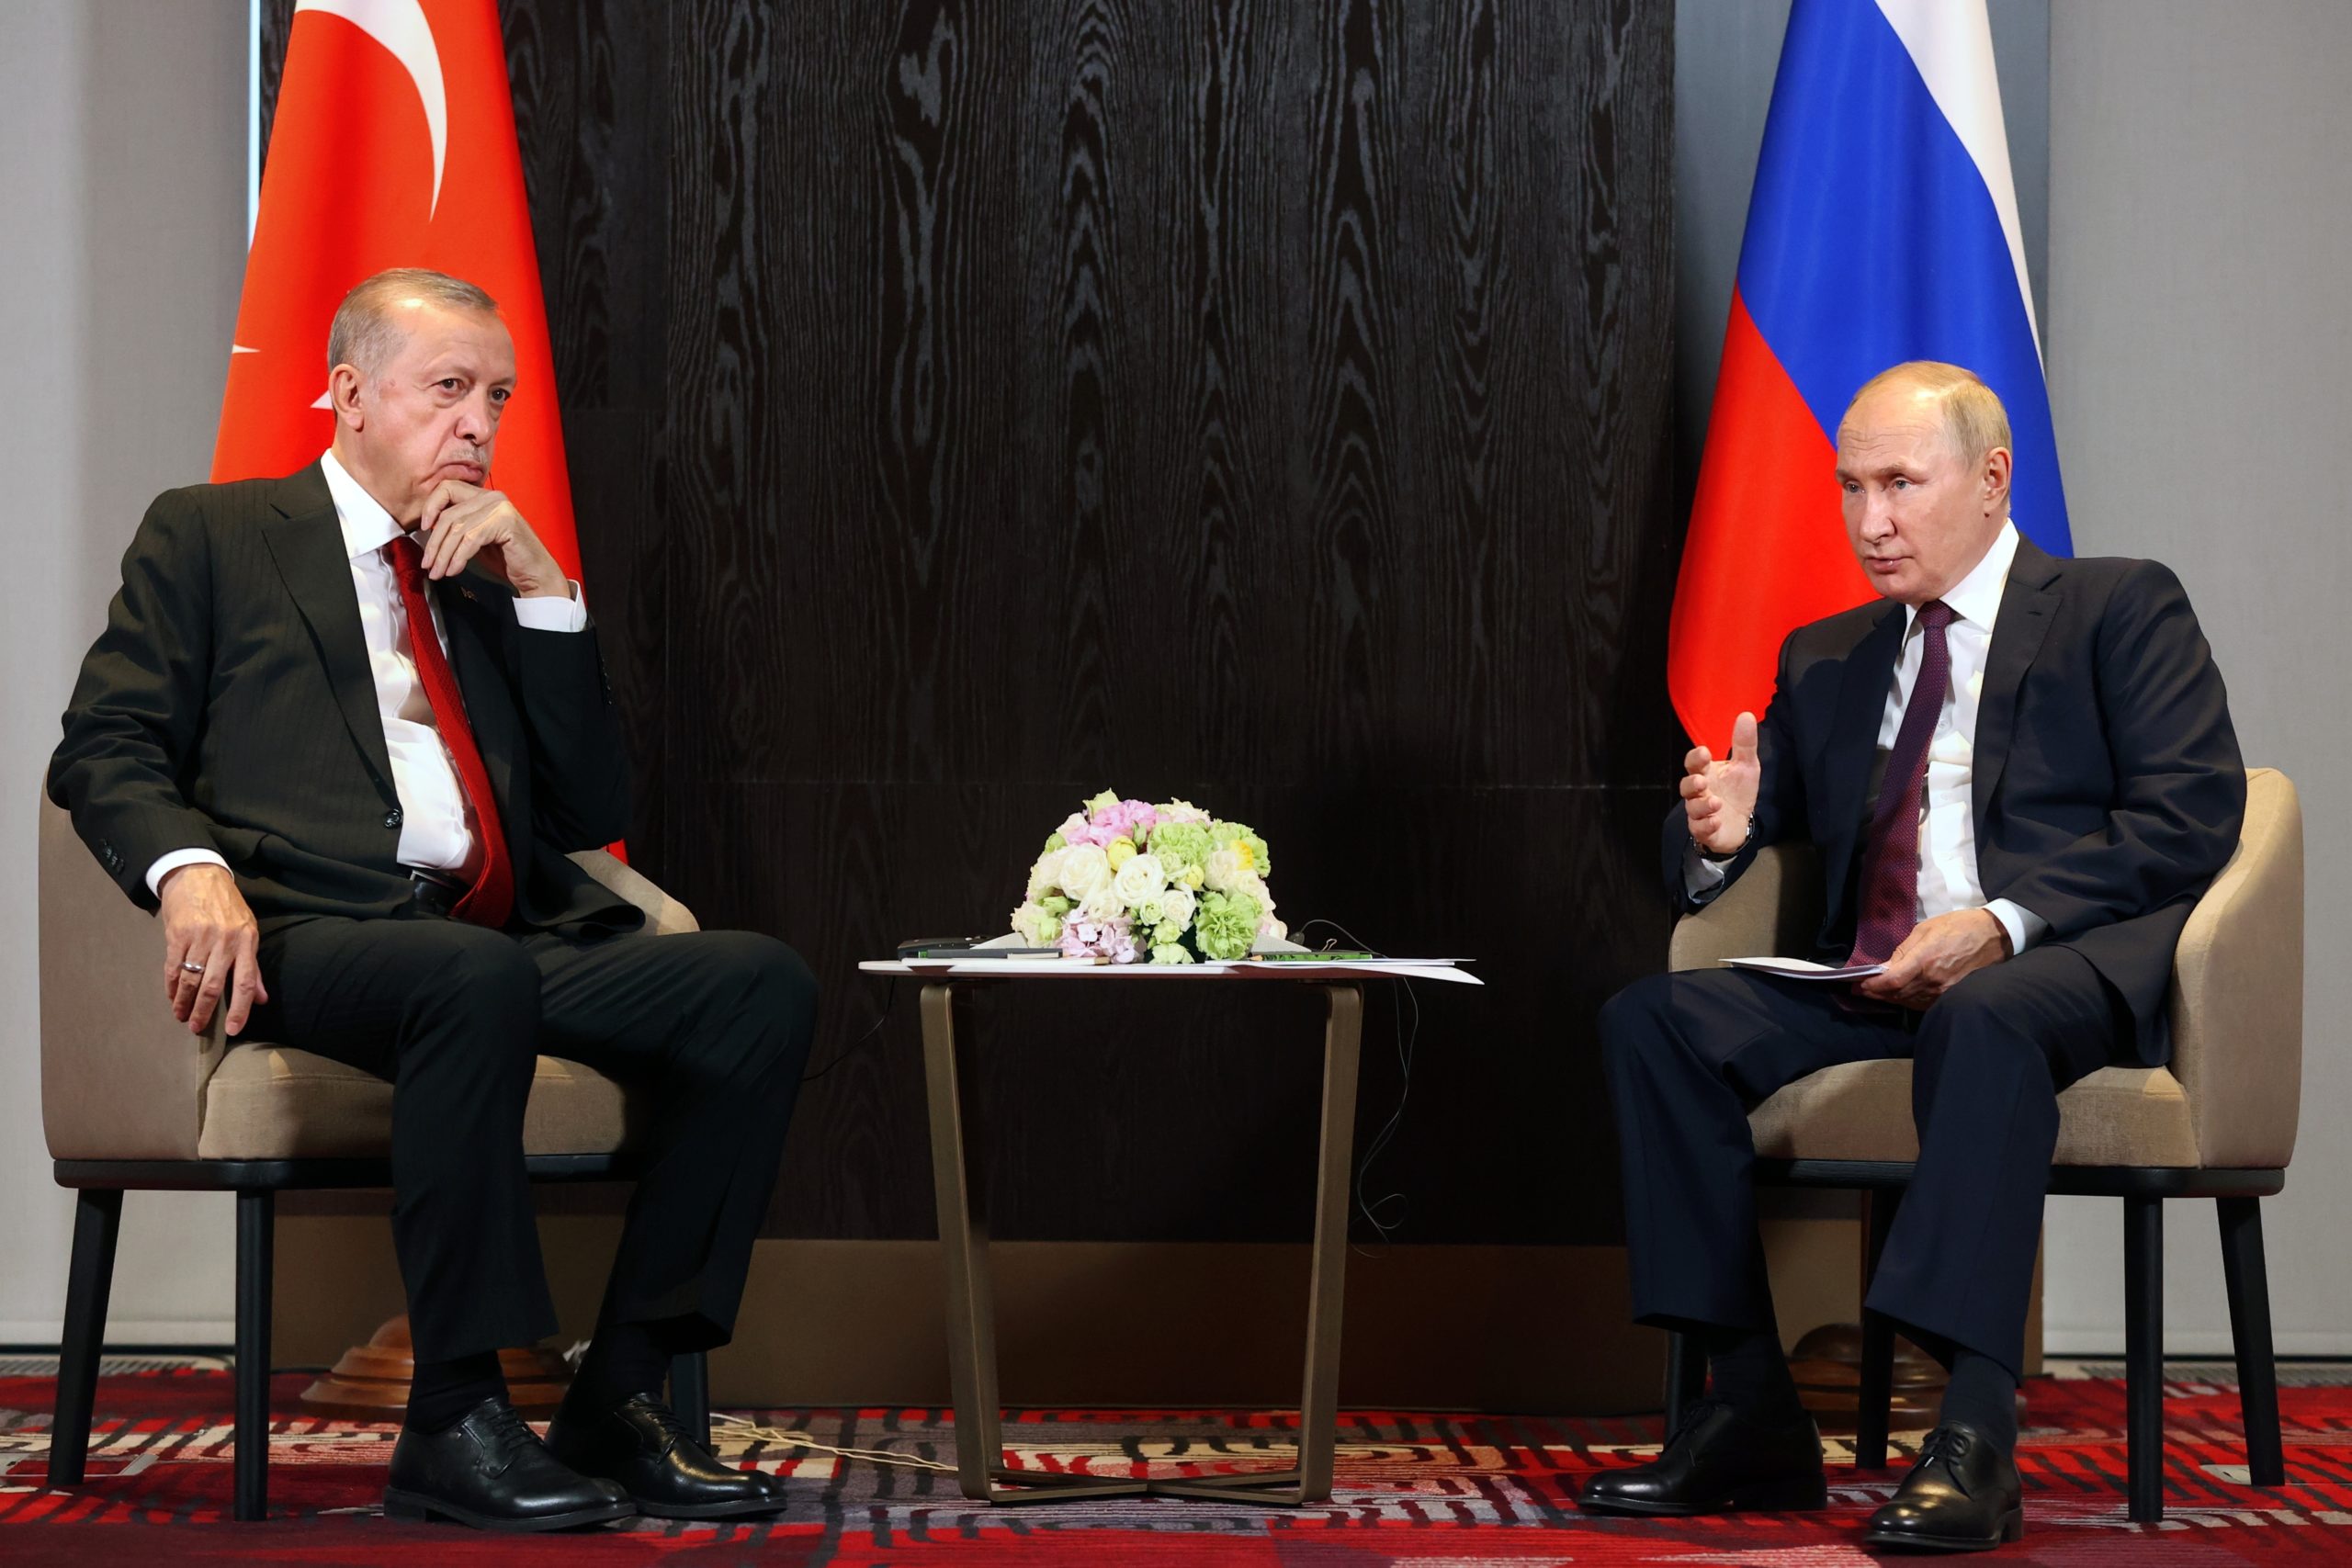 Κρεμλίνο για συνάντηση Πούτιν – Ερντογάν: Πιθανόν να συζητηθούν ειρηνευτικές προτάσεις για την Ουκρανία